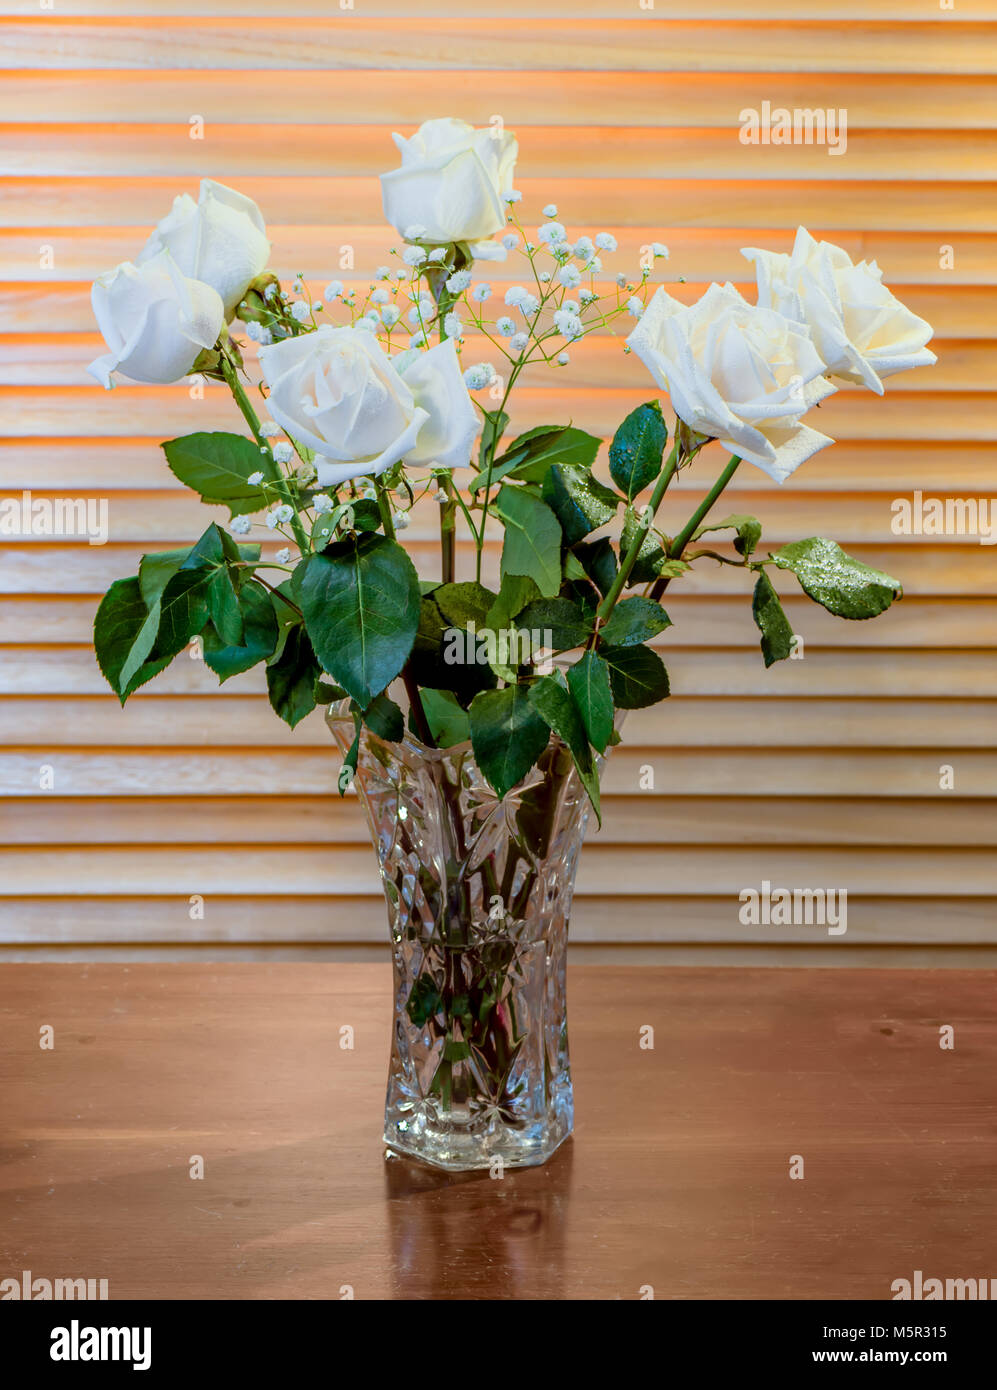 L'usine est un bouquet de roses blanches avec des feuilles vertes et petites fleurs blanches, dans un vase en verre sur une table en bois brun foncé, dans le contexte d'ye Banque D'Images